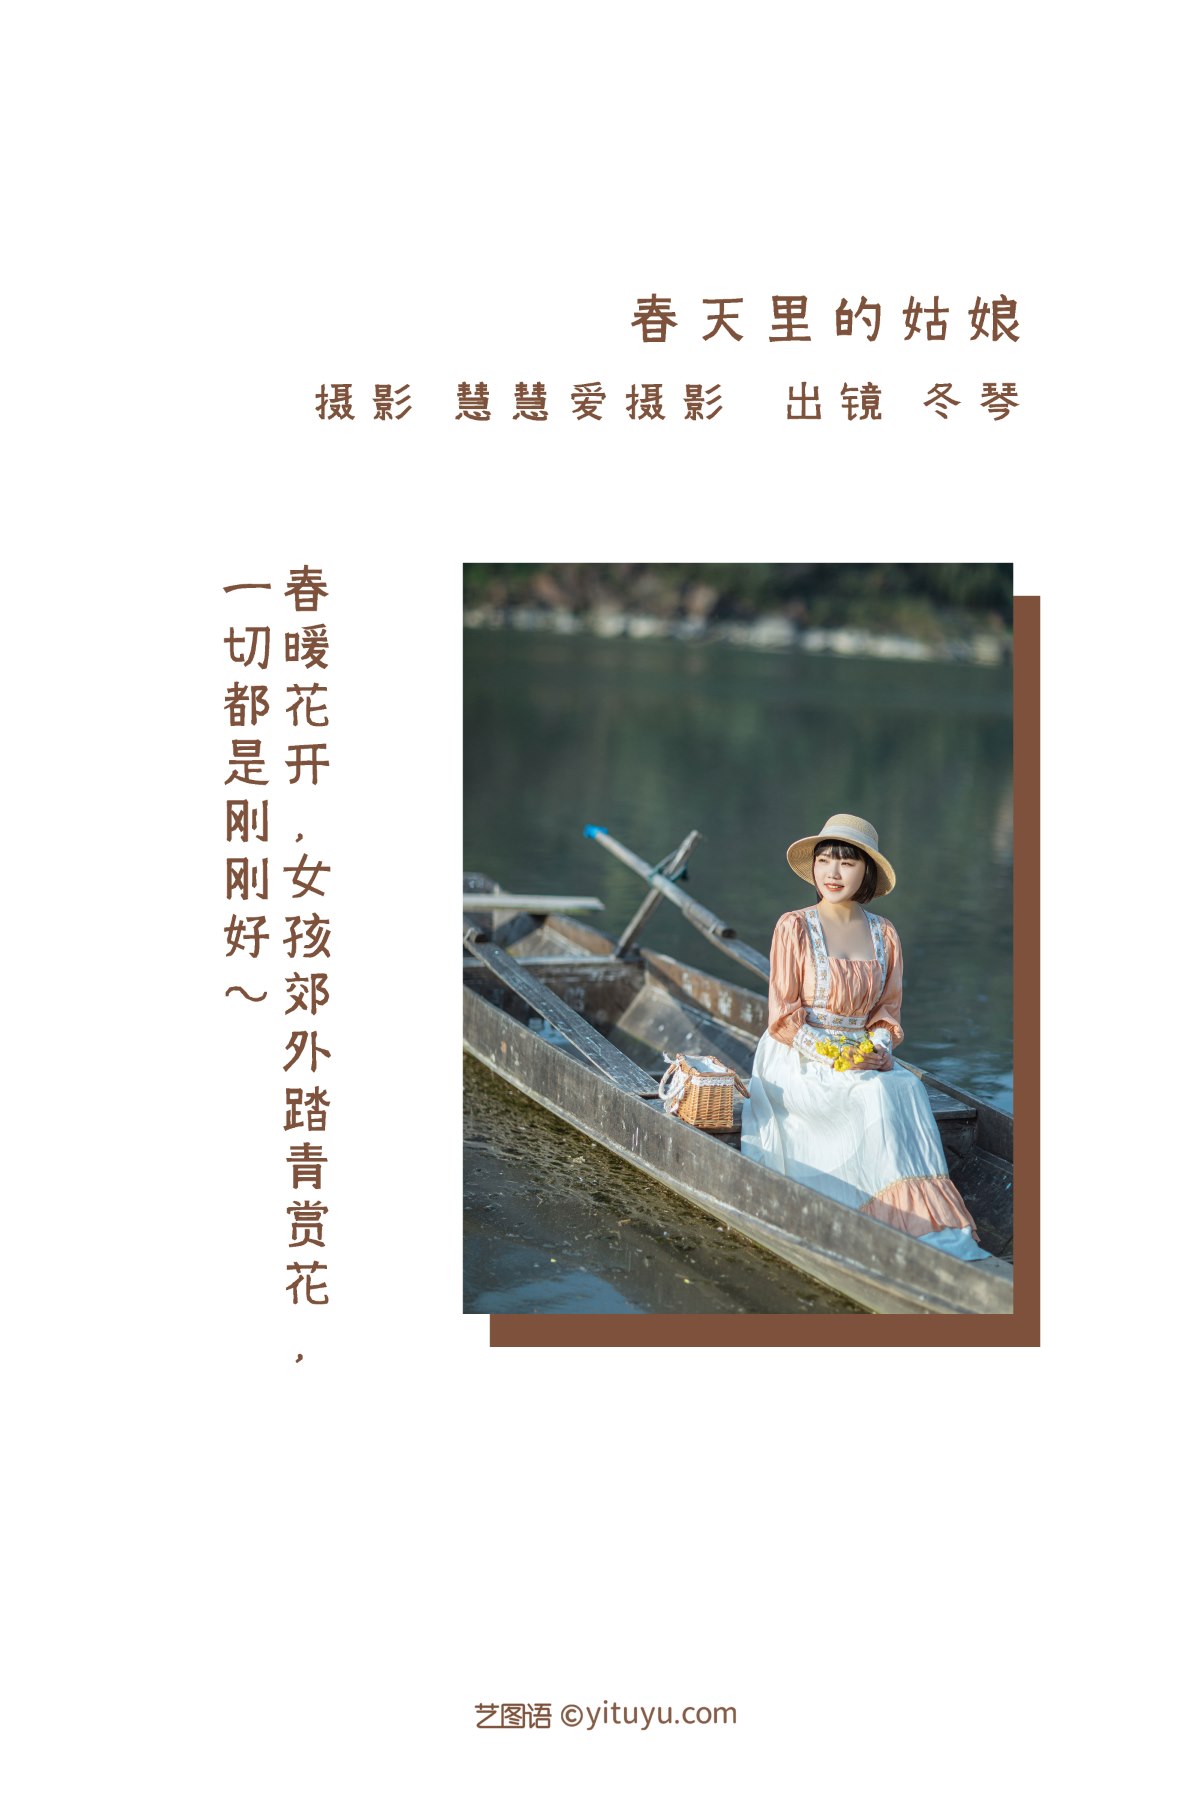 YiTuYu艺图语 Vol 2290 Dong Qin 0001 1384571120.jpg